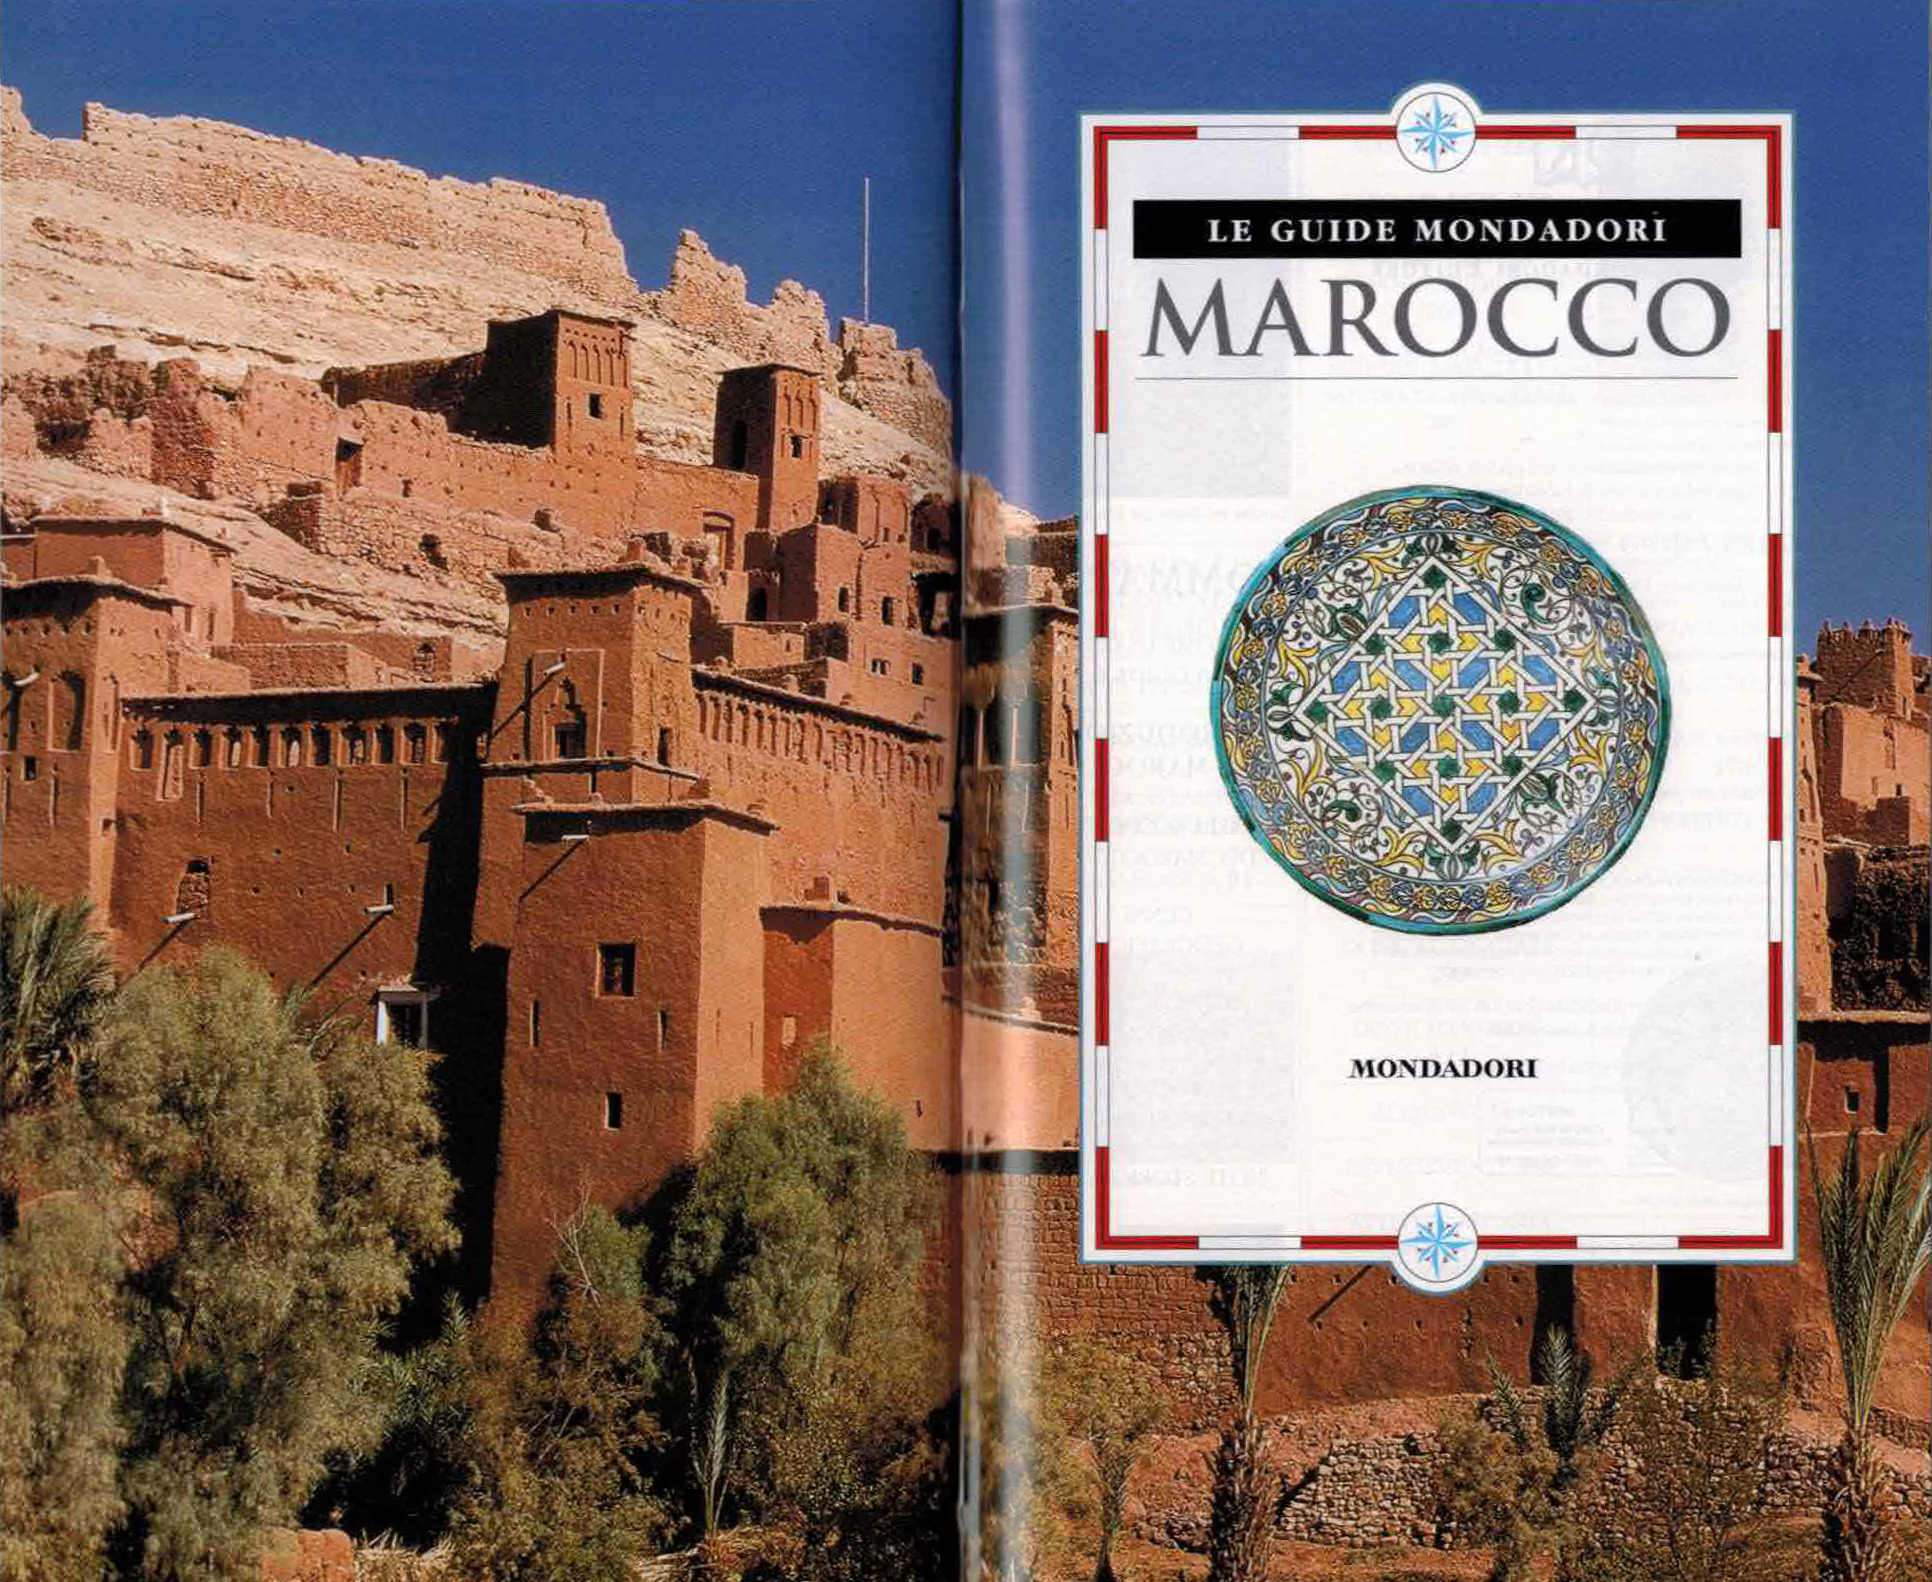 Guida Marocco Mondadori dettaglio foto